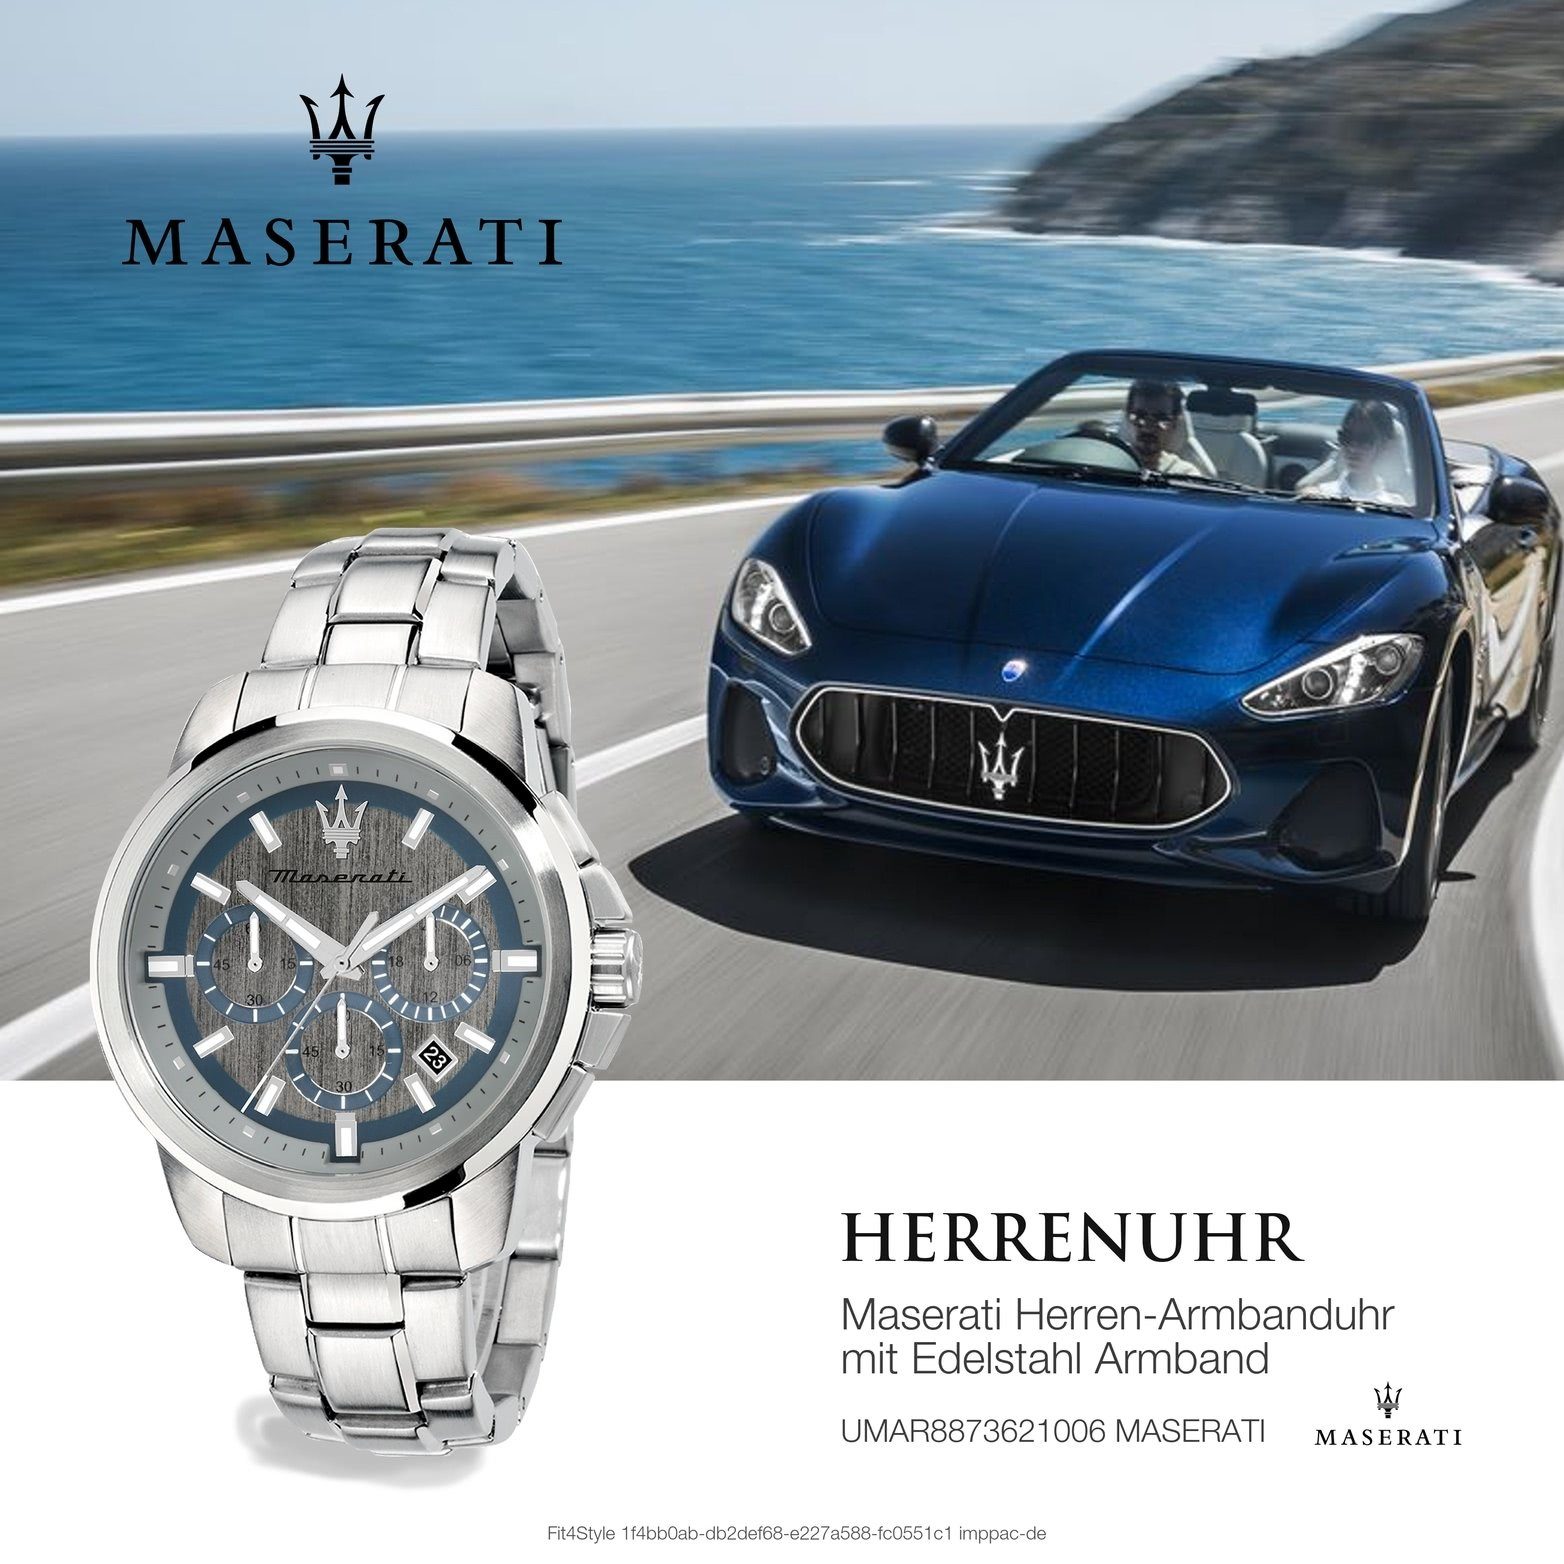 MASERATI Chronograph Maserati Edelstahl Armband-Uhr, 52x44mm) groß rundes silber Edelstahlarmband, Gehäuse, (ca. Herrenuhr